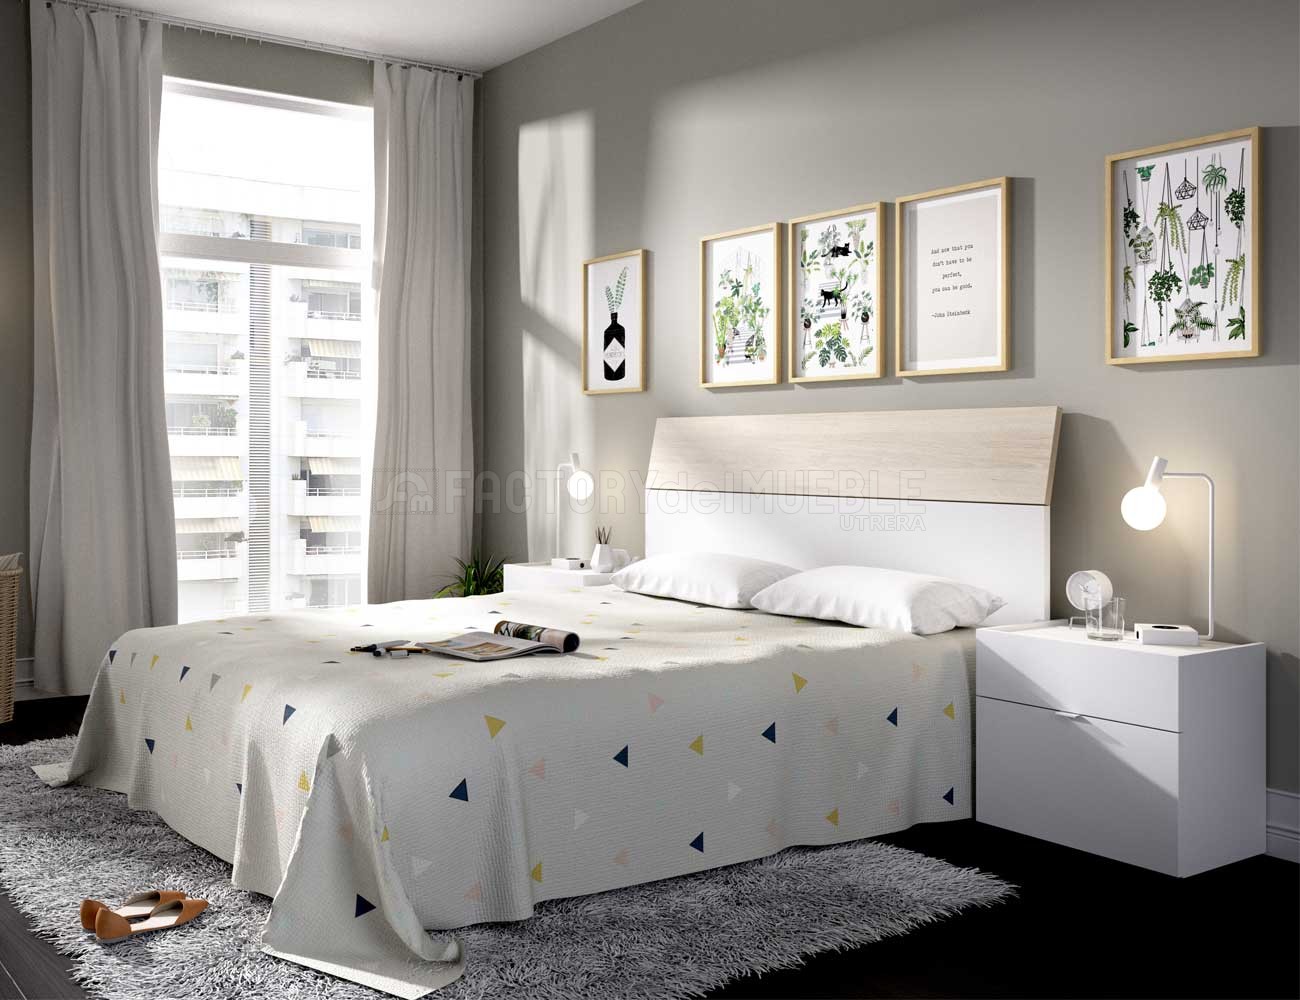 Habitación Matrimonio Completa en Color Roble y Blanco Estilo Nórdico  (Cama+cabecero+2 mesitas+cómoda)